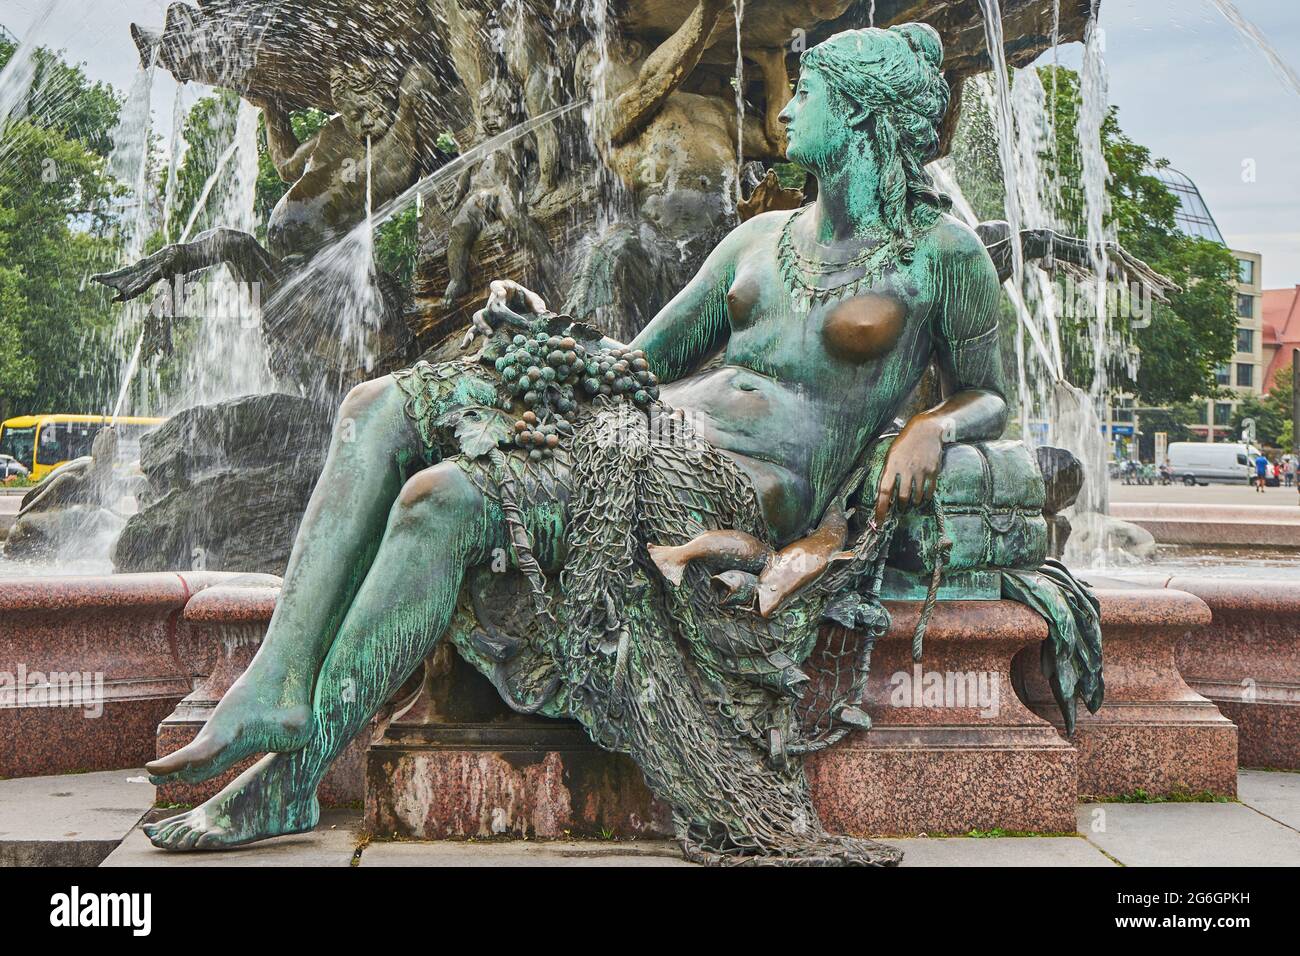 Frauenfigur, verkörpert den Fluss Rhein, Neptunbrunnen, Schlossbrunnen oder Begasbrunnen, von Reinhold Begas, Berlin-Mitte, Berlin, Deutschland Stock Photo